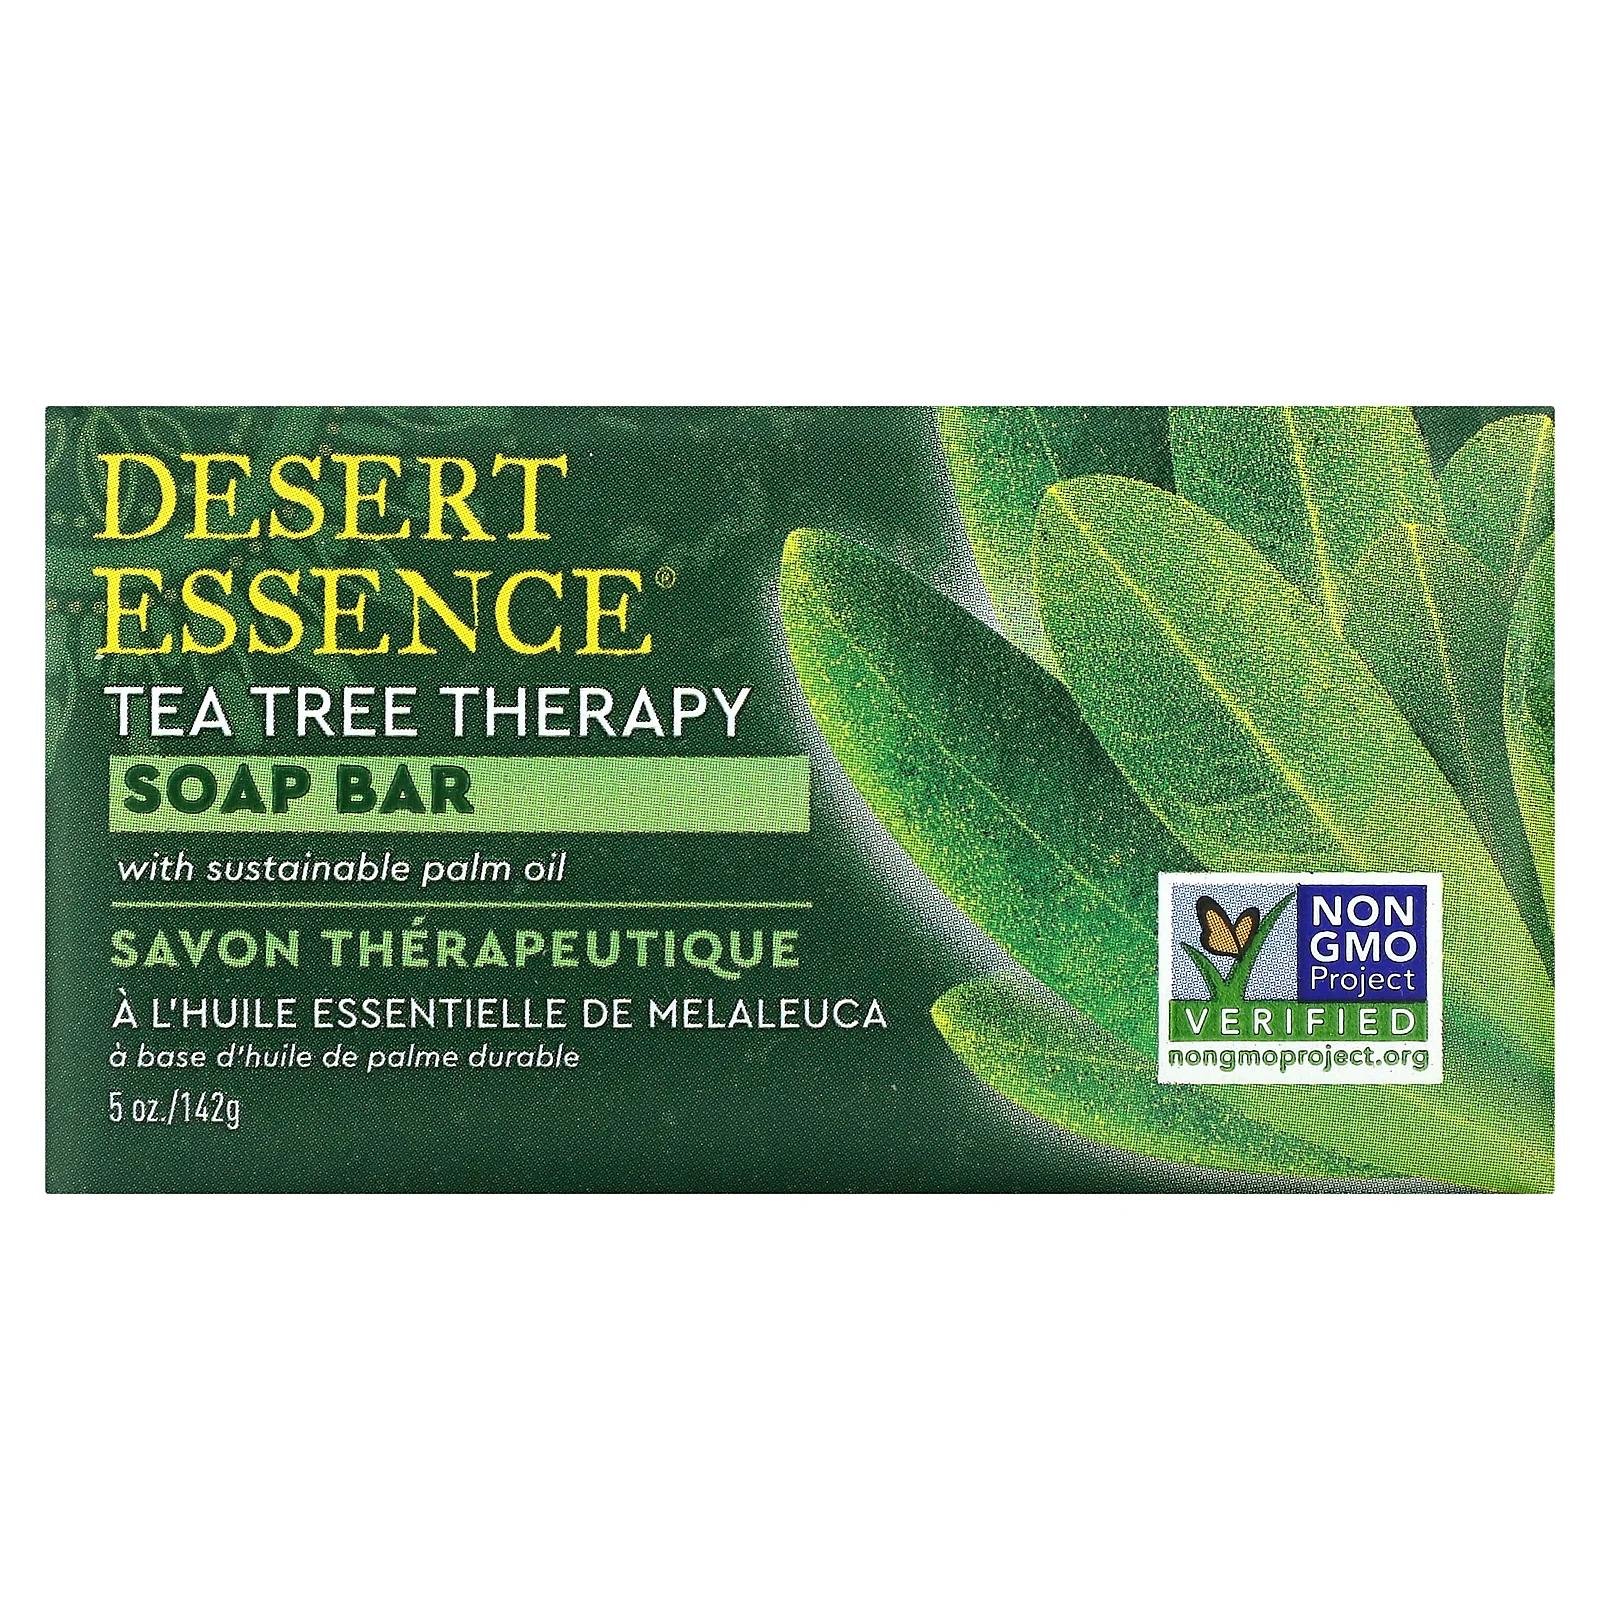 Desert Essence очищающее мыло с маслом чайного дерева 142 г (5 унций) мыло tea tree therapy 5 унций 142 г desert essence